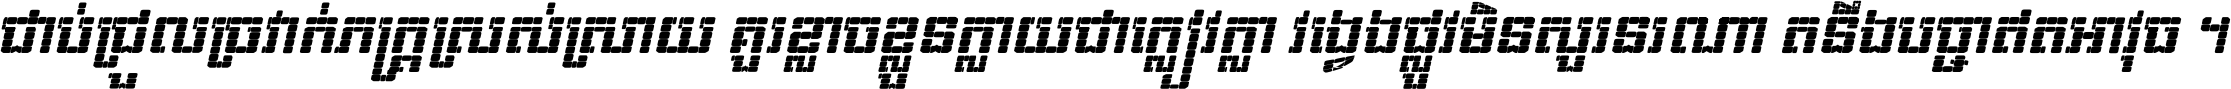 Kh Baphnom 02 Pixel Italic